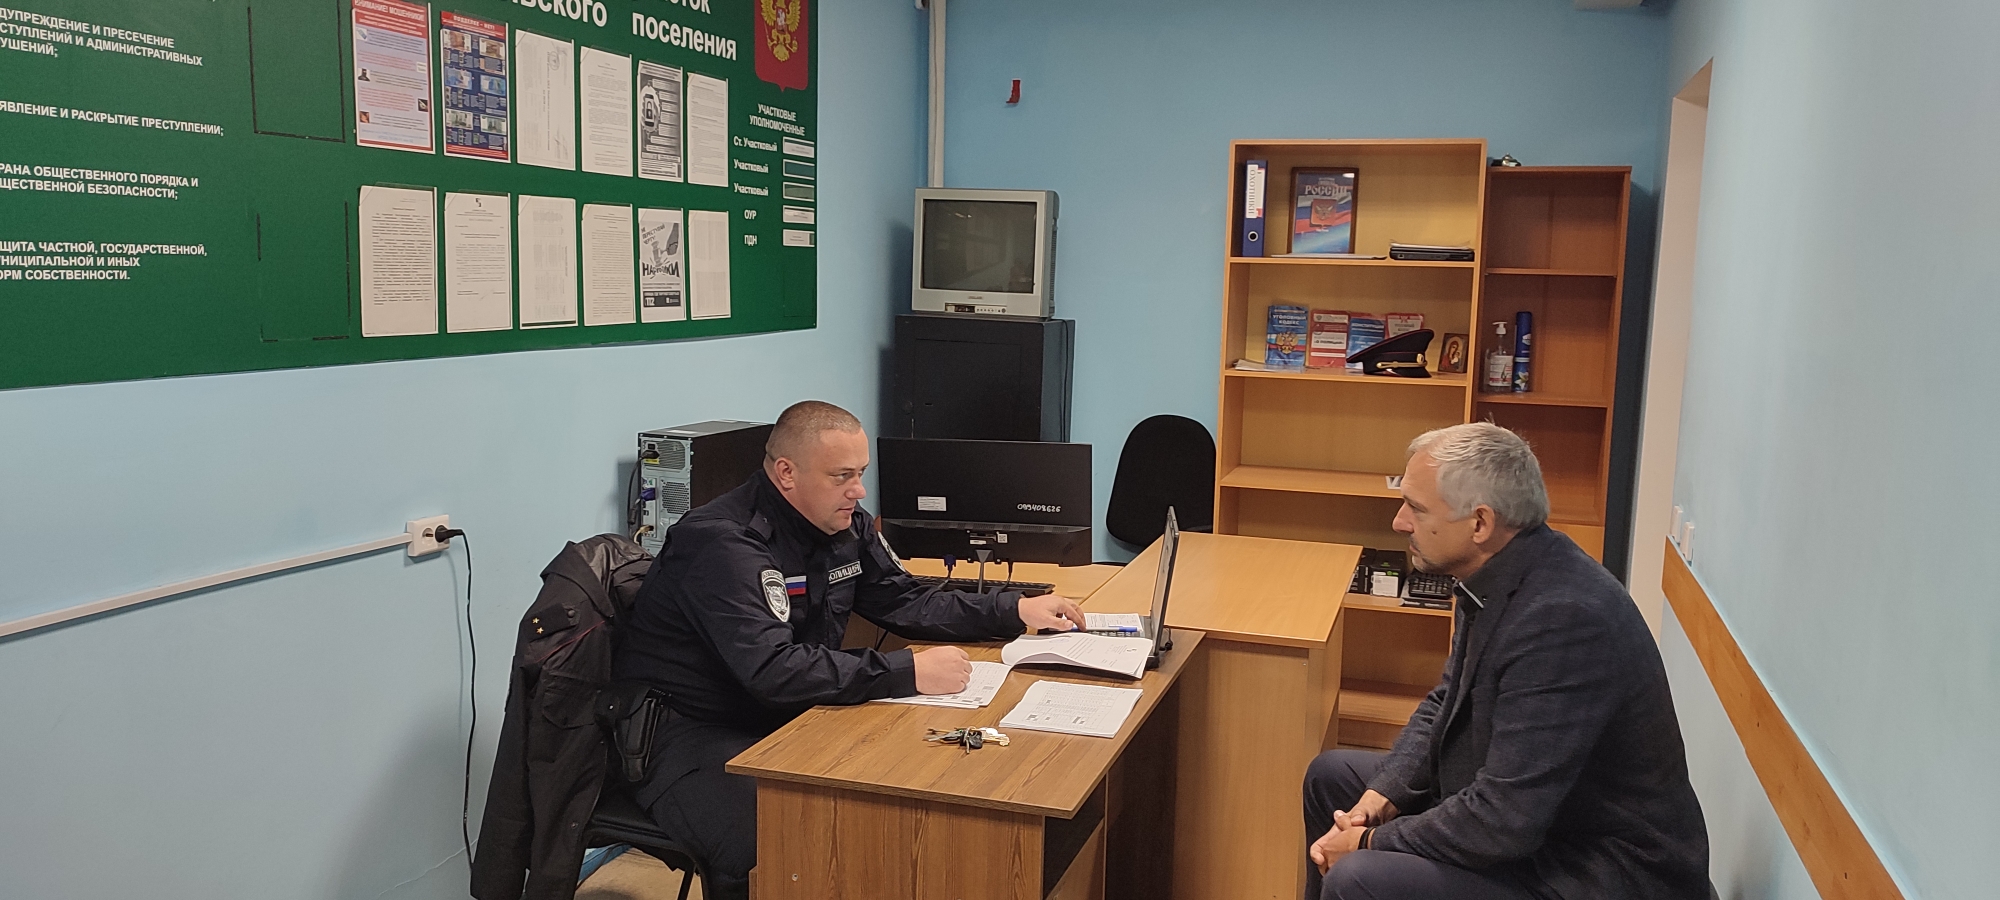 Представитель Общественного совета Валерий Прокофьев посетил с проверкой участковый пункт полиции